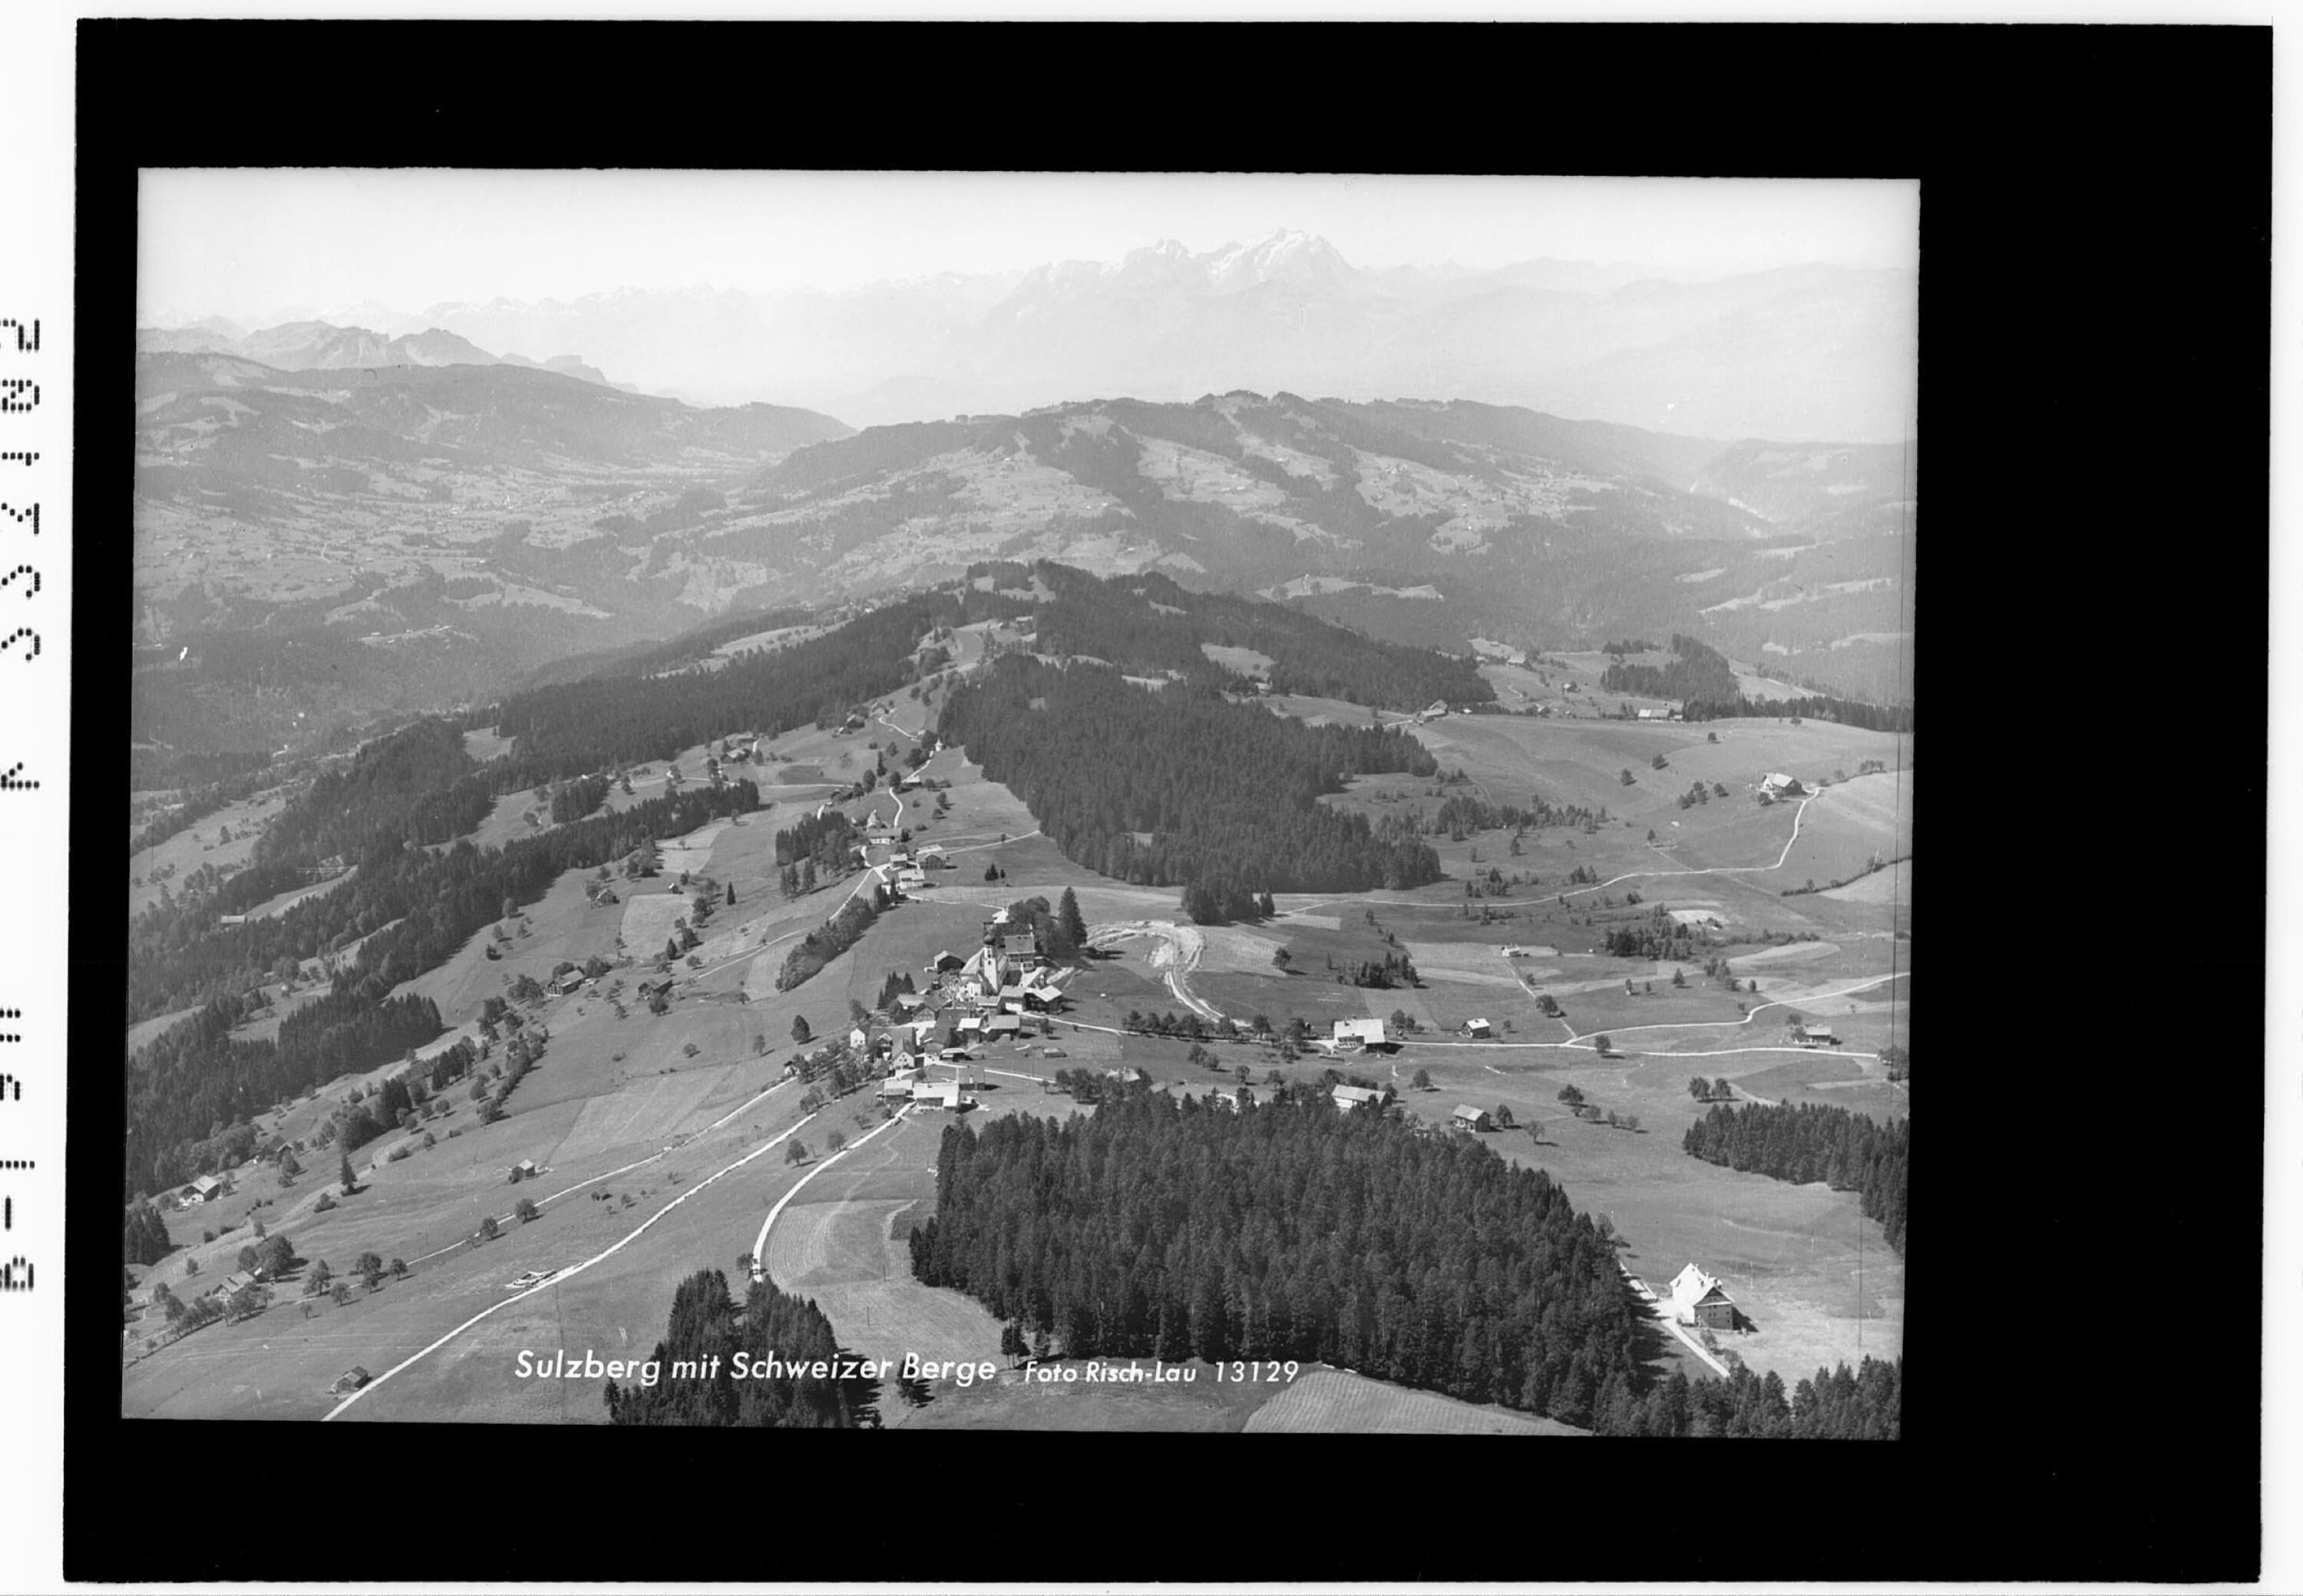 Sulzberg mit Schweizer Berge></div>


    <hr>
    <div class=